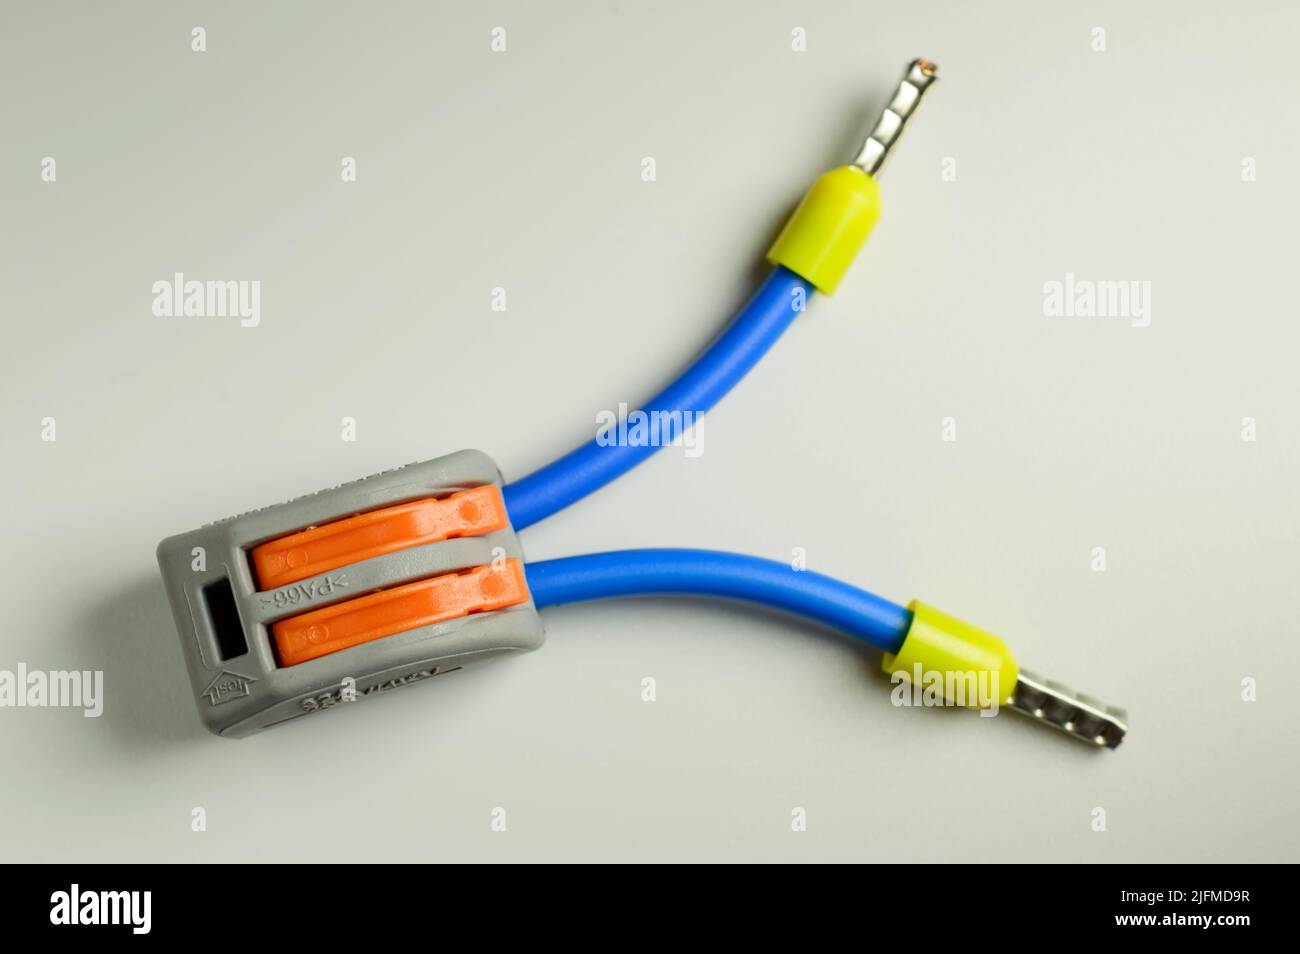 Borne électrique pour connexion rapide de fils avec fils bleus connectés avec des embouts jaunes - macro photo. Image d'arrière-plan. Mise au point sélective. Banque D'Images